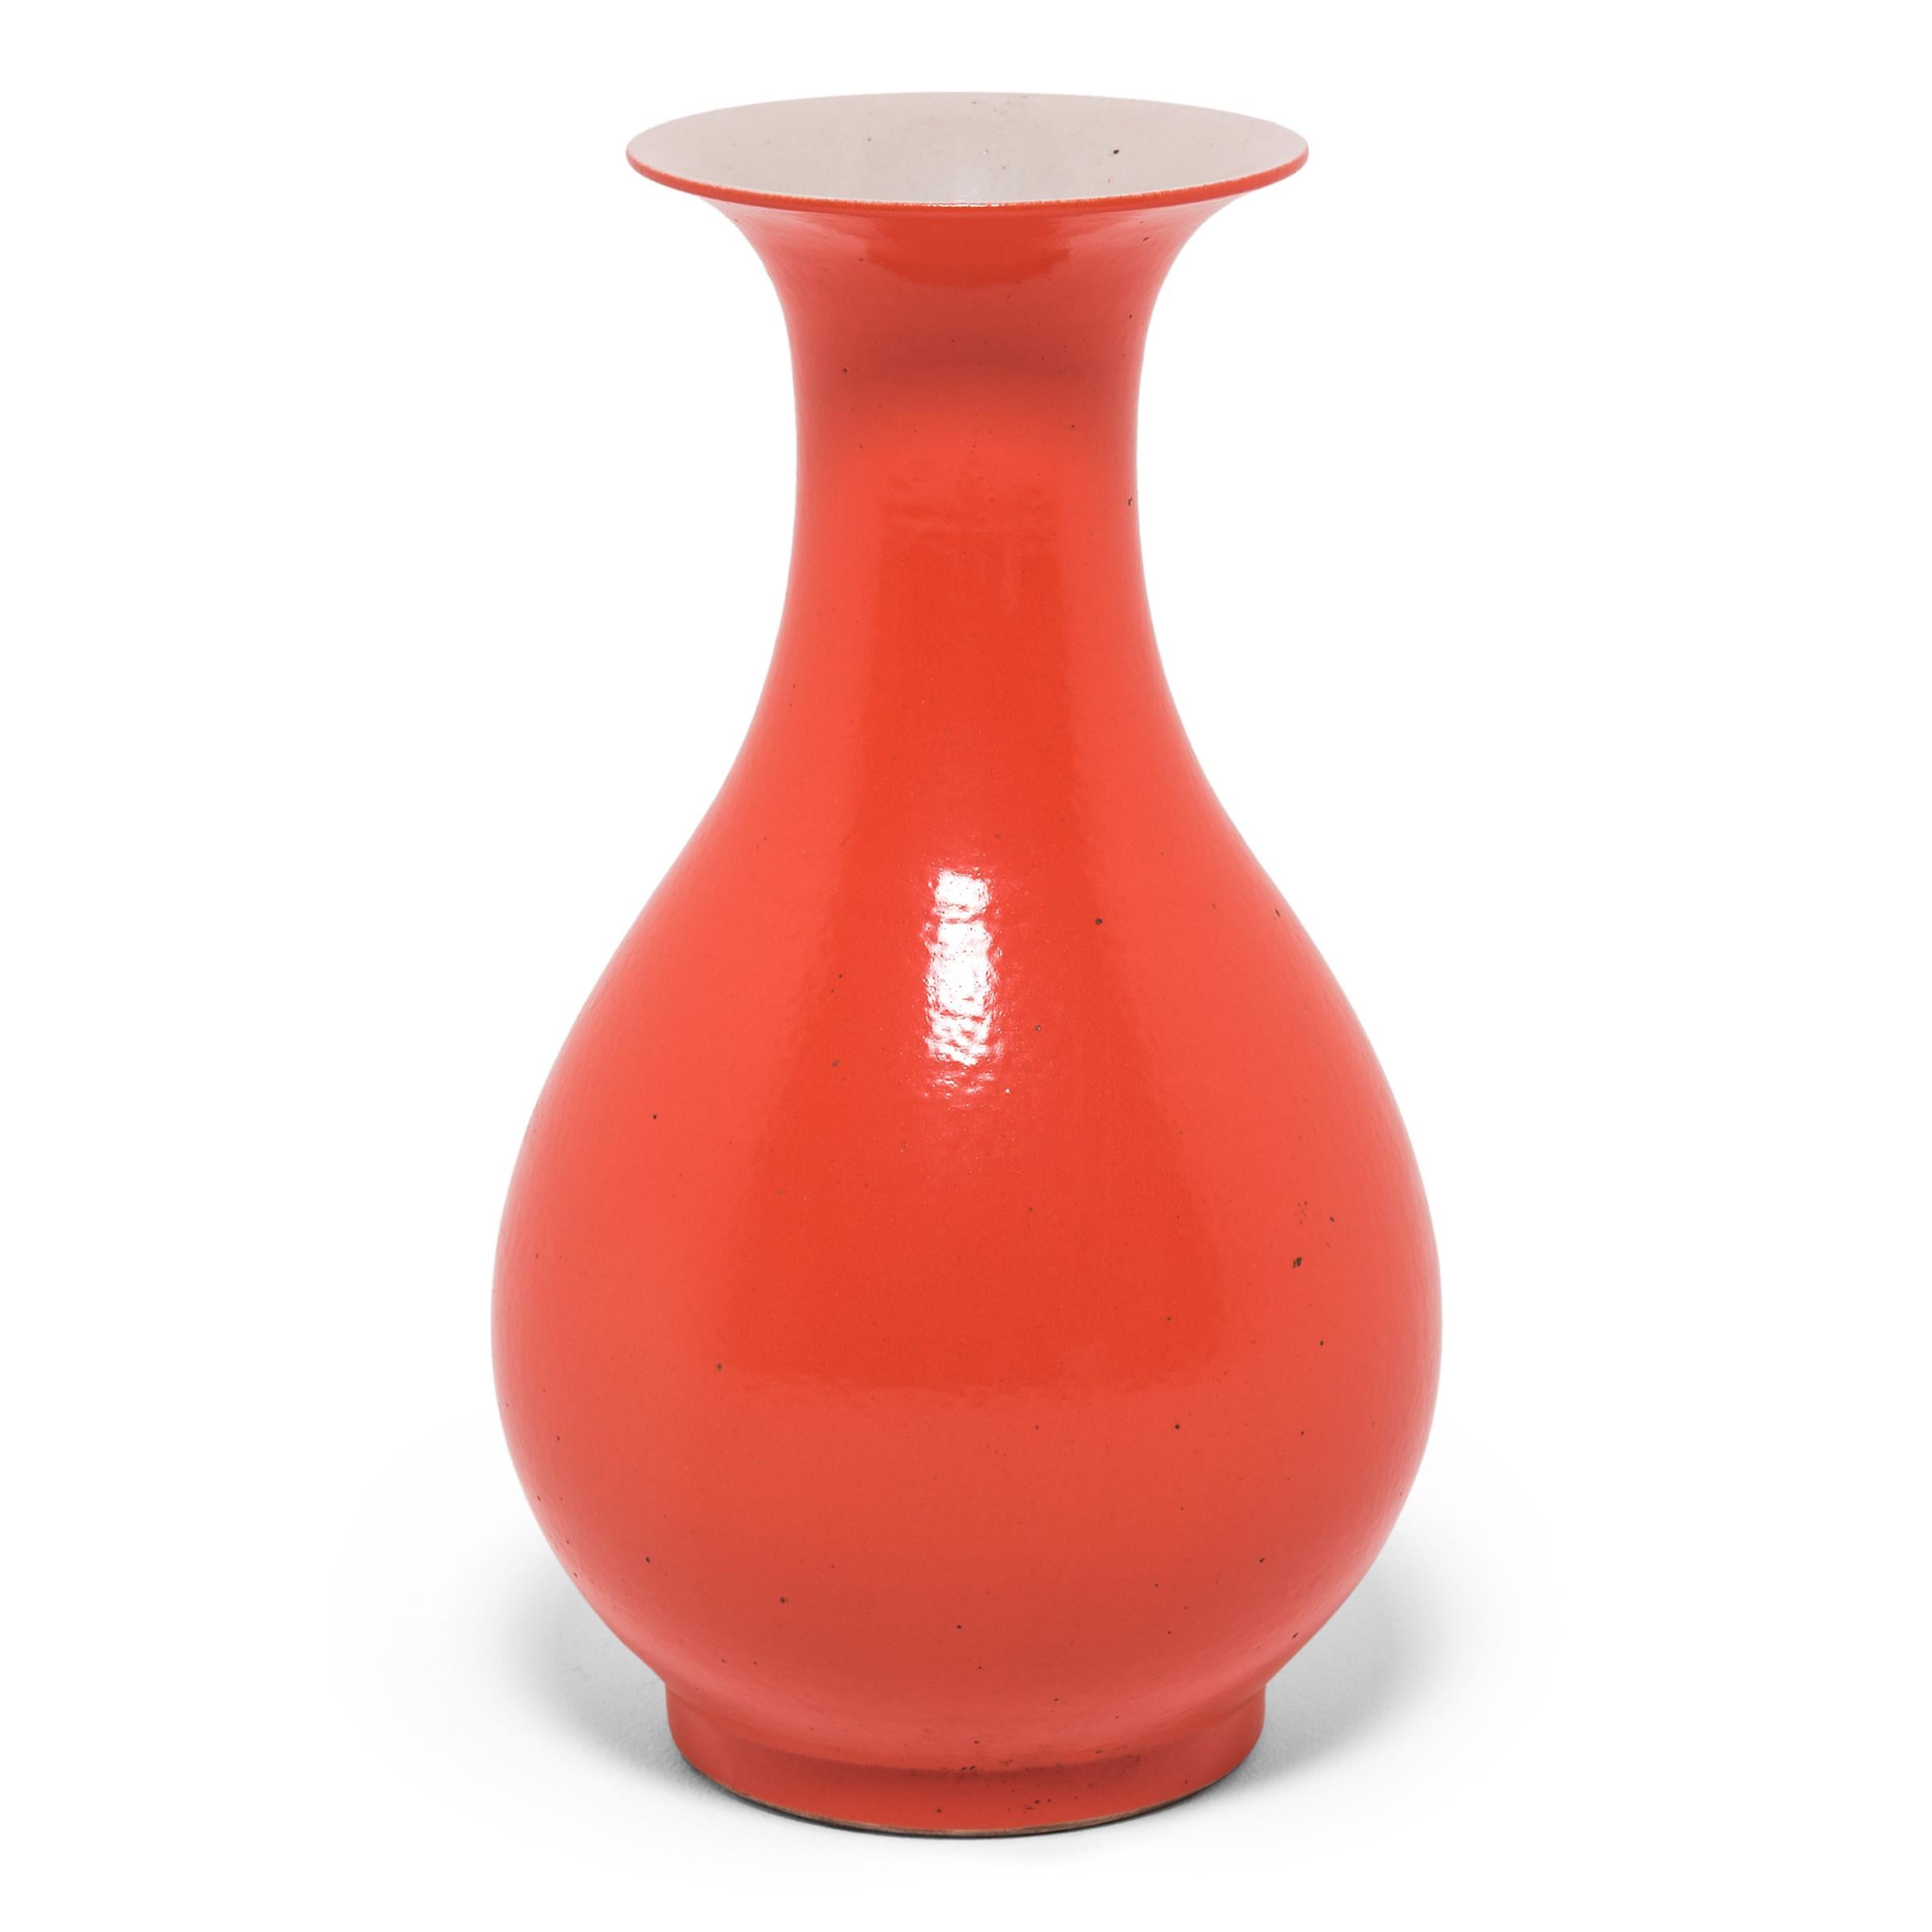 Le monochrome saisissant de ce vase s'inspire d'une longue tradition chinoise de céramiques émaillées d'une seule et unique couleur. La forme gracieusement incurvée de ce vase en porcelaine est animée par une glaçure orange vibrante inspirée du